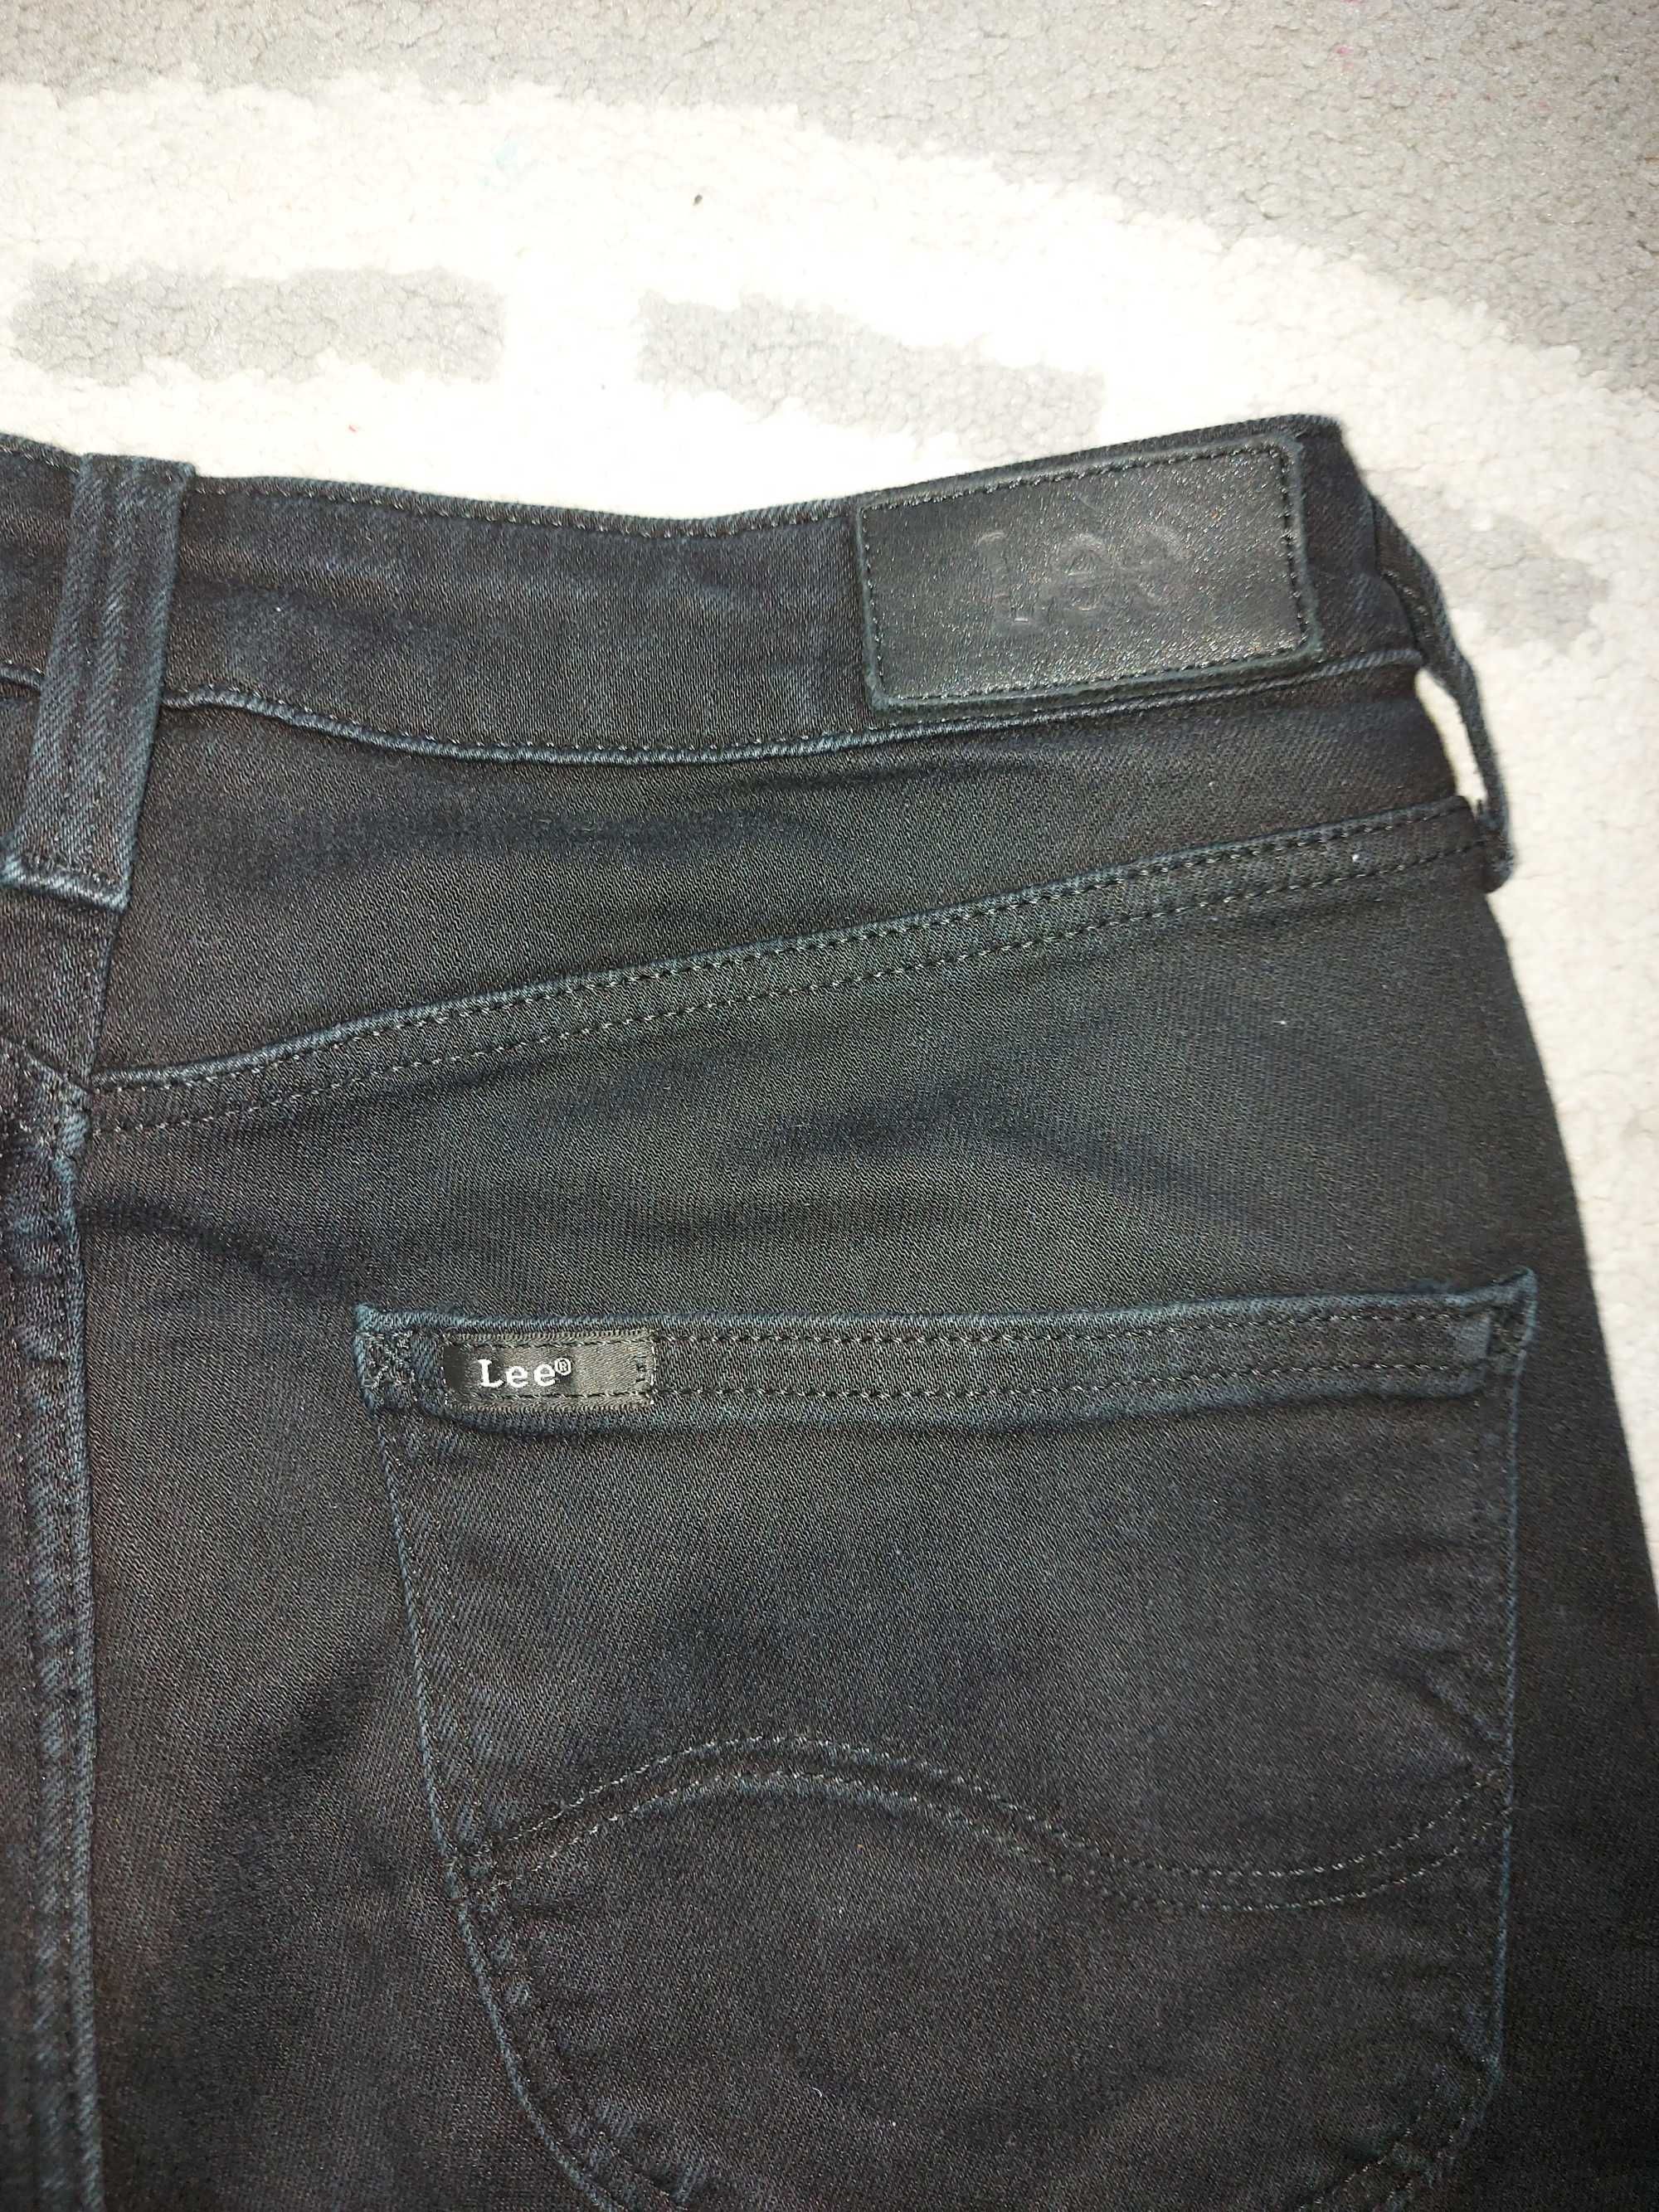 Spodnie jeansy Lee r. S/M